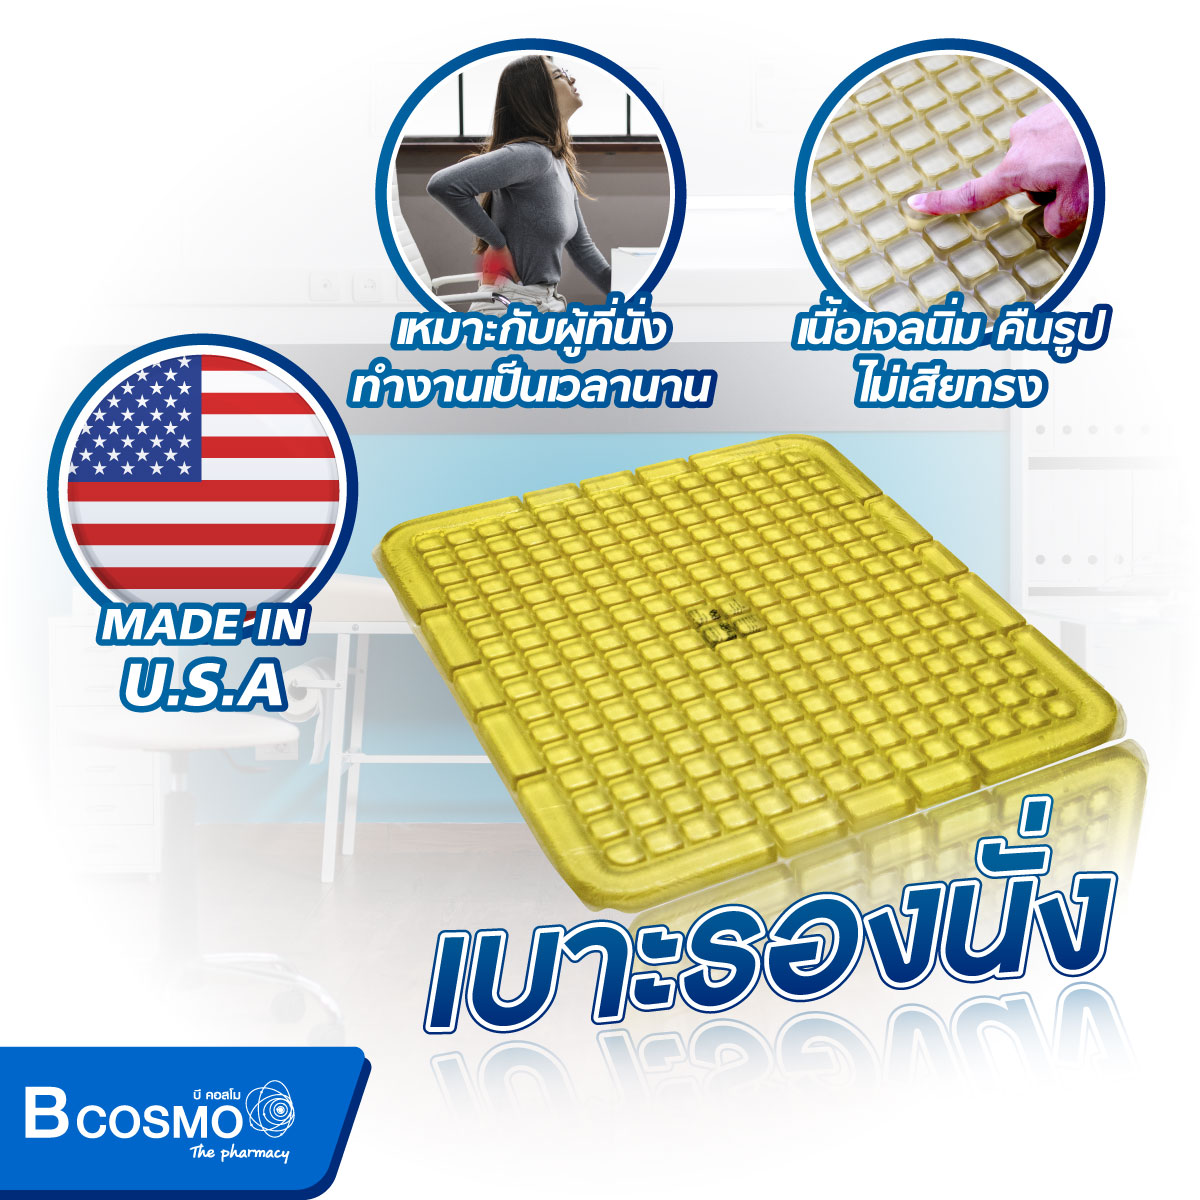 เบาะเจล ACTION USA Adaptive Cube Pad CU1618